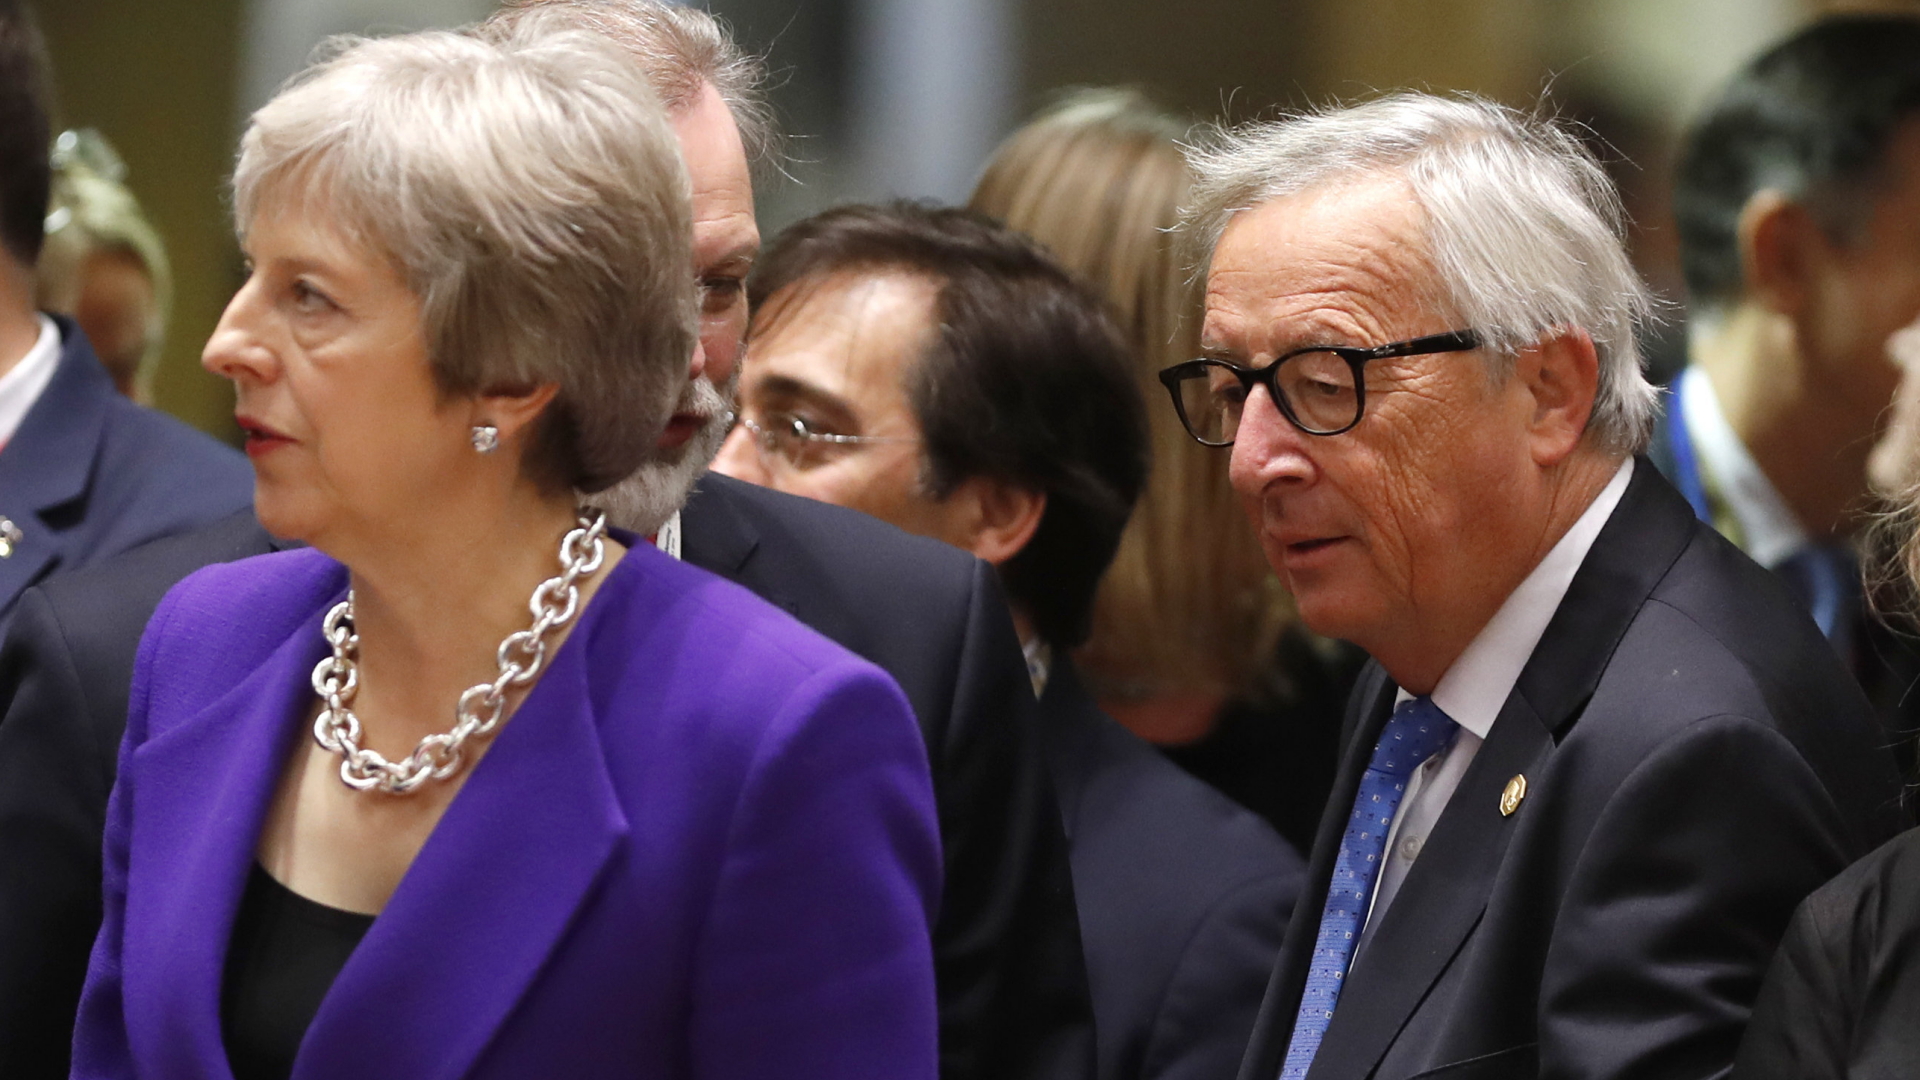 Die britische Premierministerin Theresa May und EU-Kommissionschef Jean-Claude Juncker in einer Menschenmenge. | Bildquelle: AP